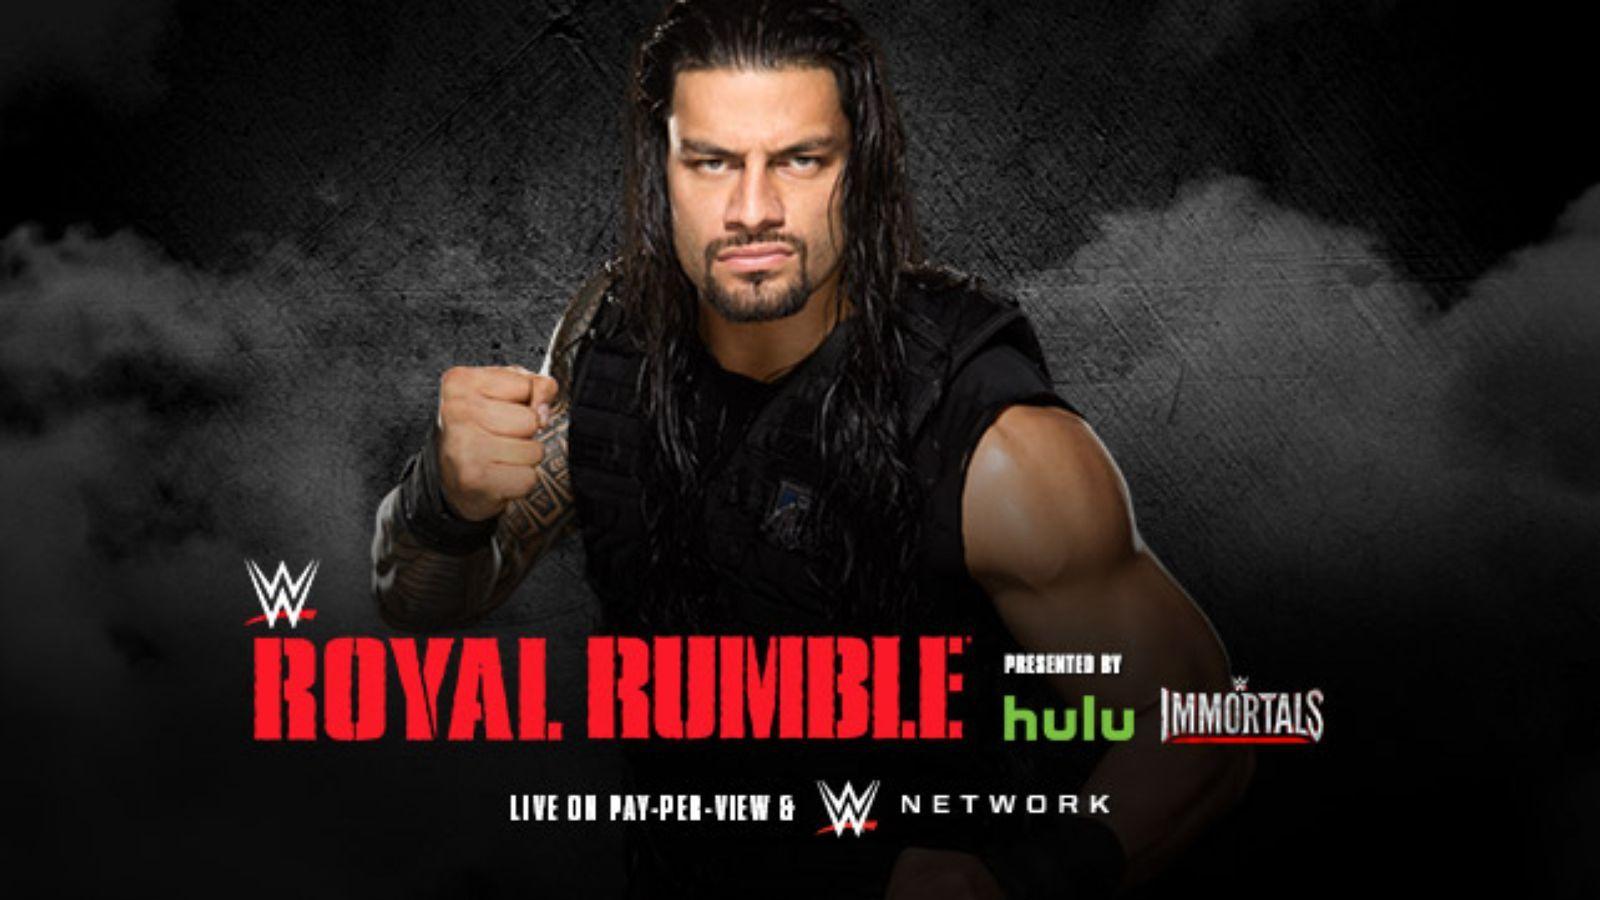 Royal Rumble HD Image 1. Royal Rumble HD Image. HD